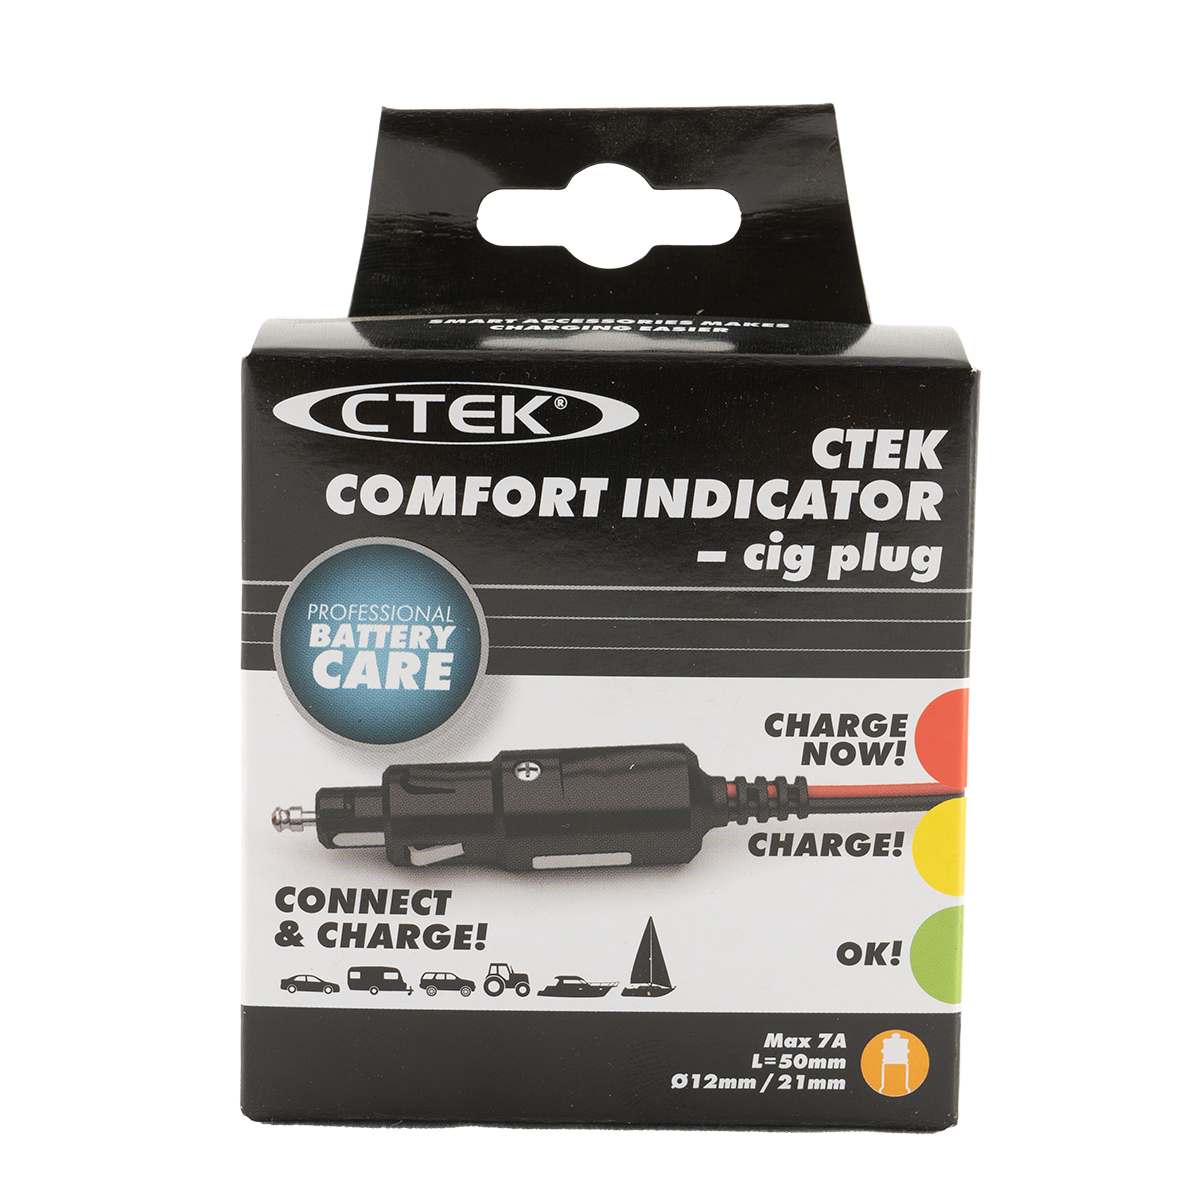 CTEK Comfort Indicator Cig Plug Batterieladeanzeige für 12V Steckdose 500mm